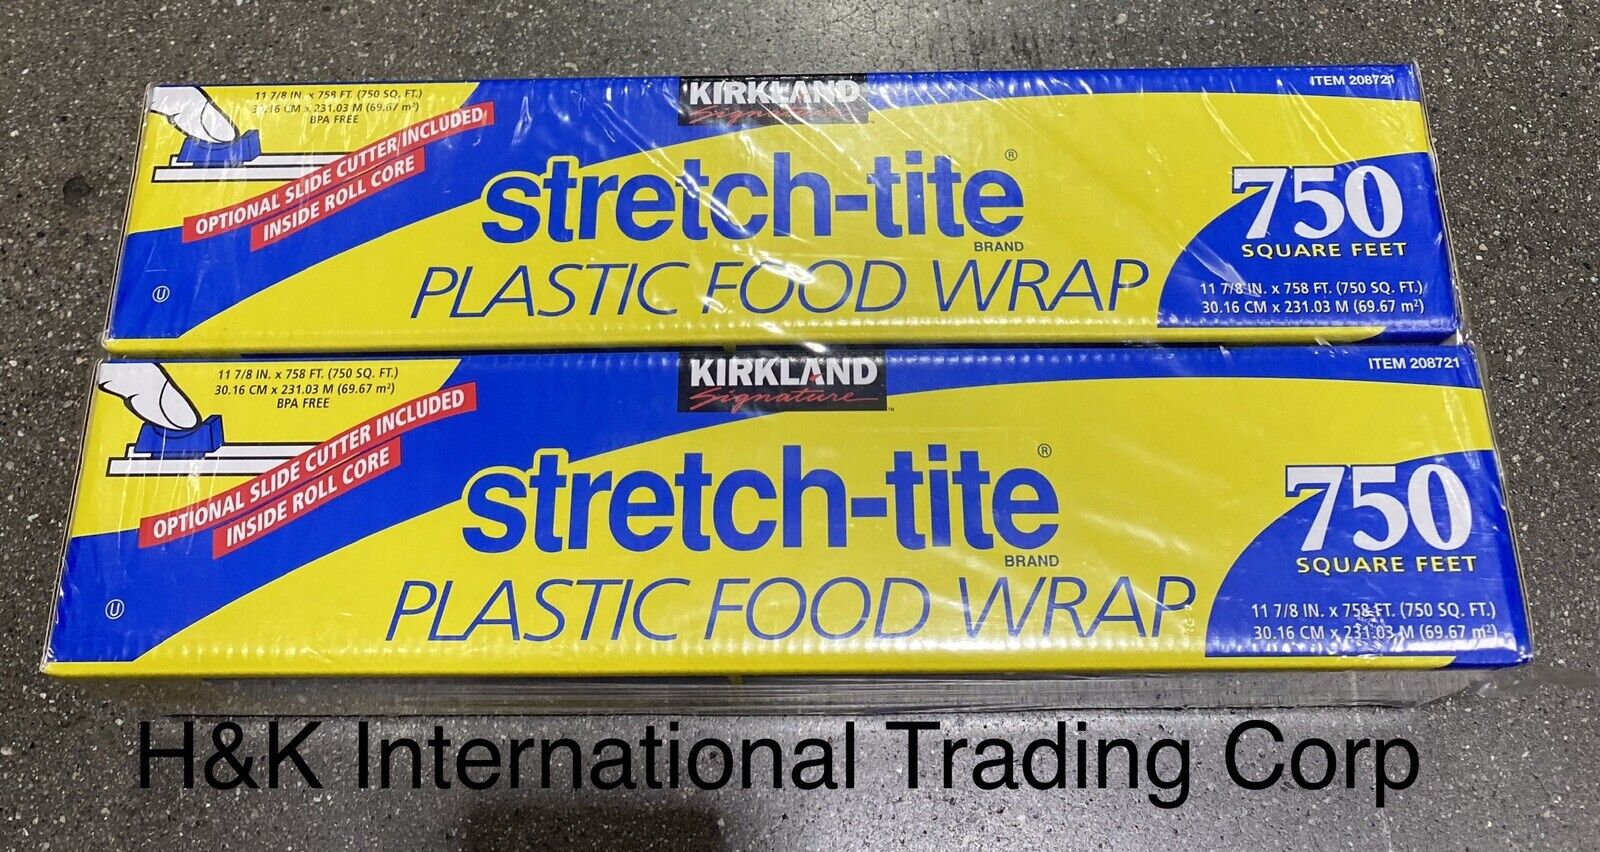 Kirkland Signature Stretch-Tite Plastic Food Wrap, 11-7/8L x 750'W, 2 ct